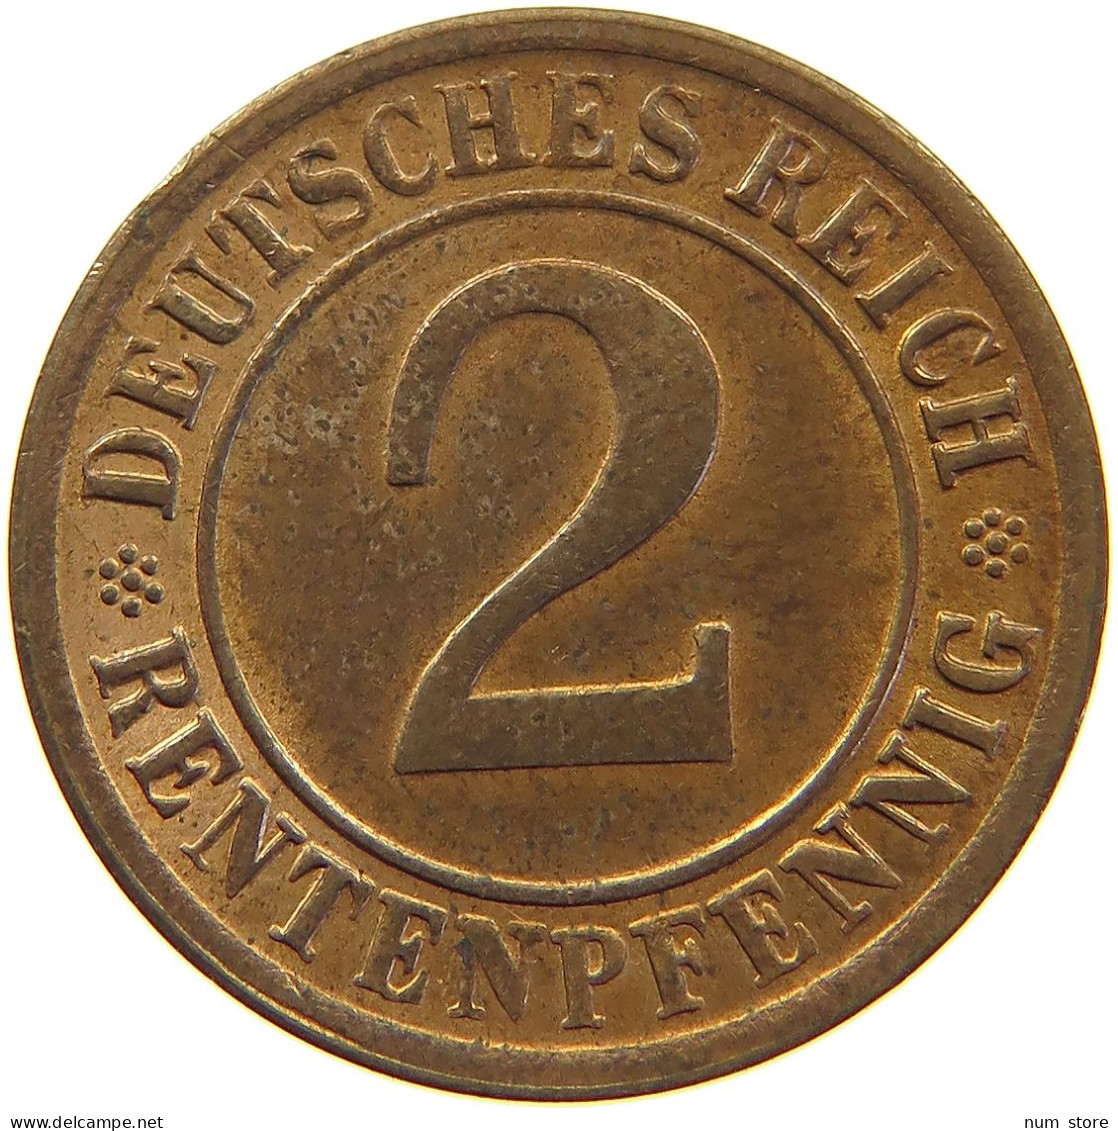 WEIMARER REPUBLIK 2 PFENNIG 1924 NO LETTER MINTING ERROR #c062 0221 - 2 Rentenpfennig & 2 Reichspfennig